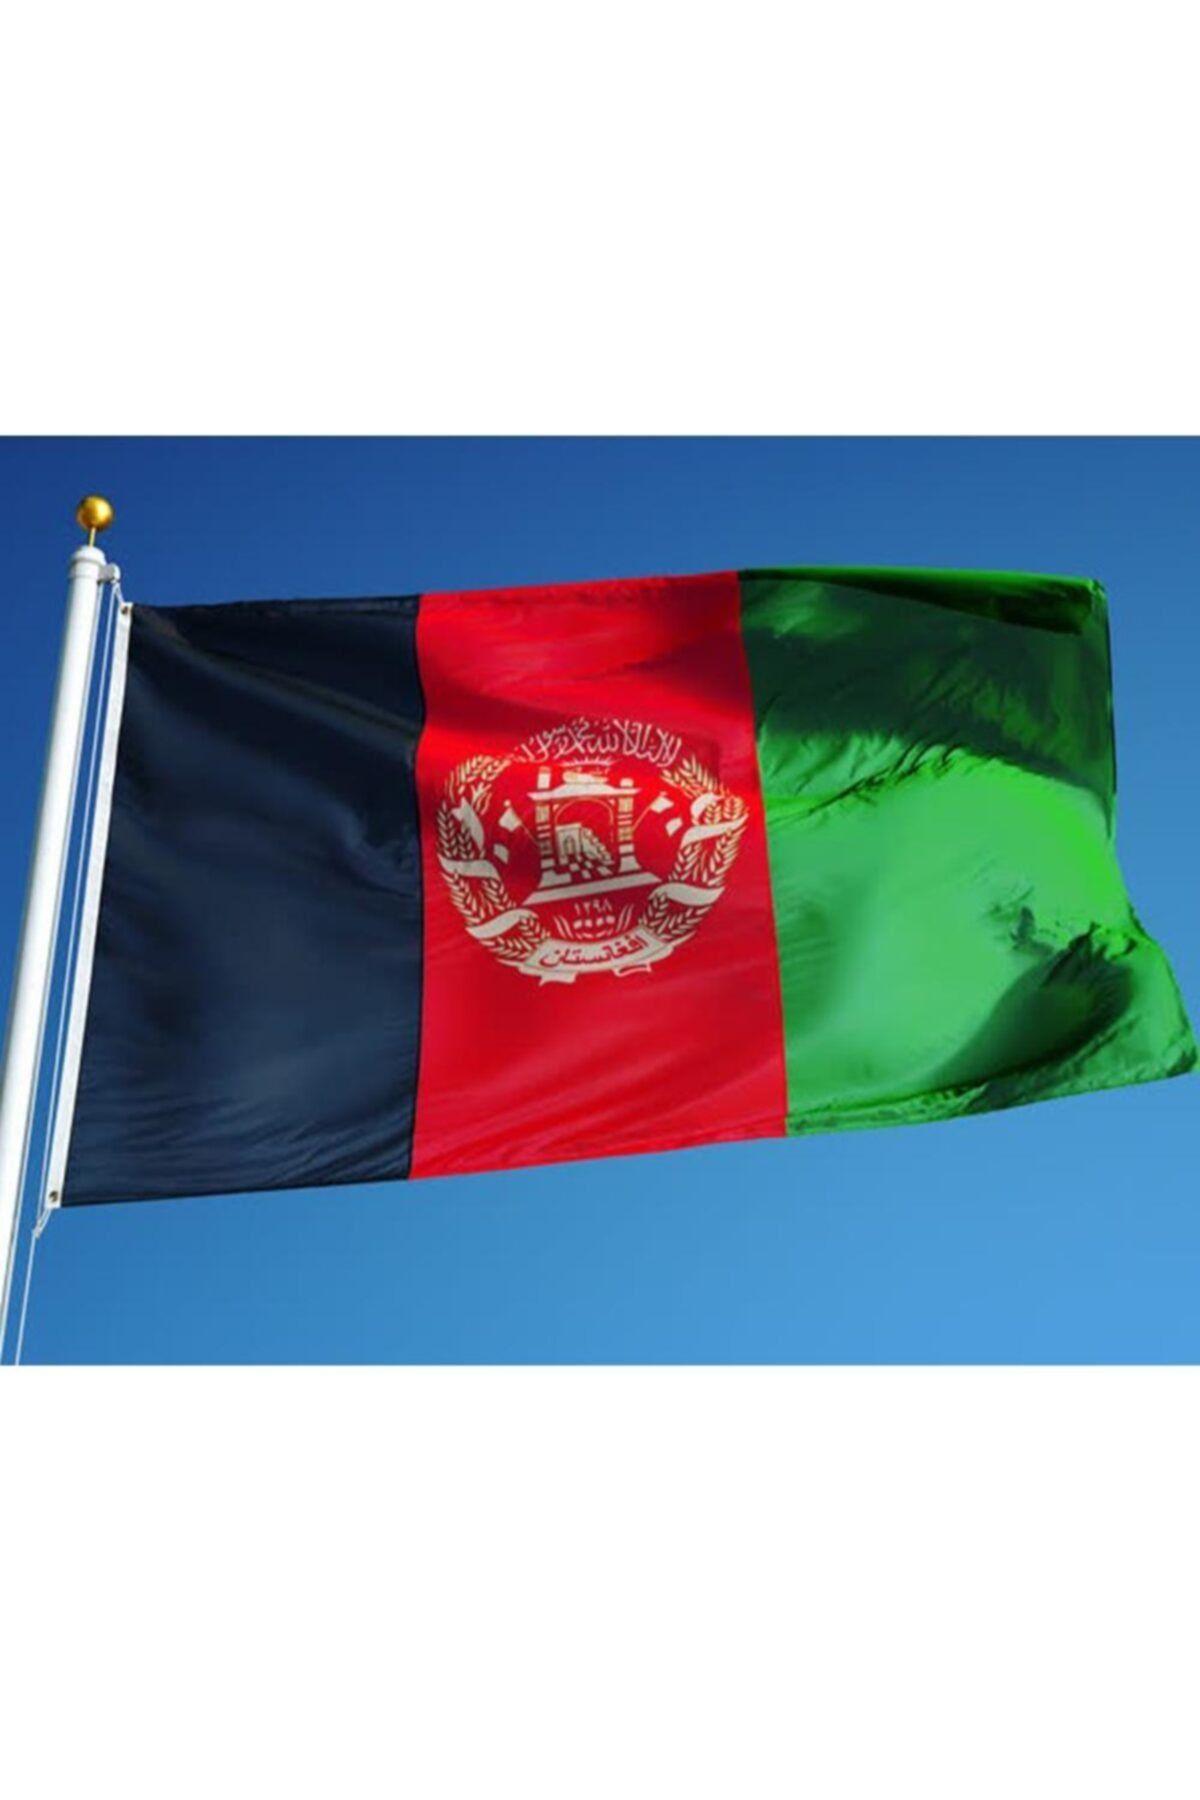 Fors Bayrak Afganistan Gönder Bayrağı 1. Kalite Raşel Kumaş 50x75 cm